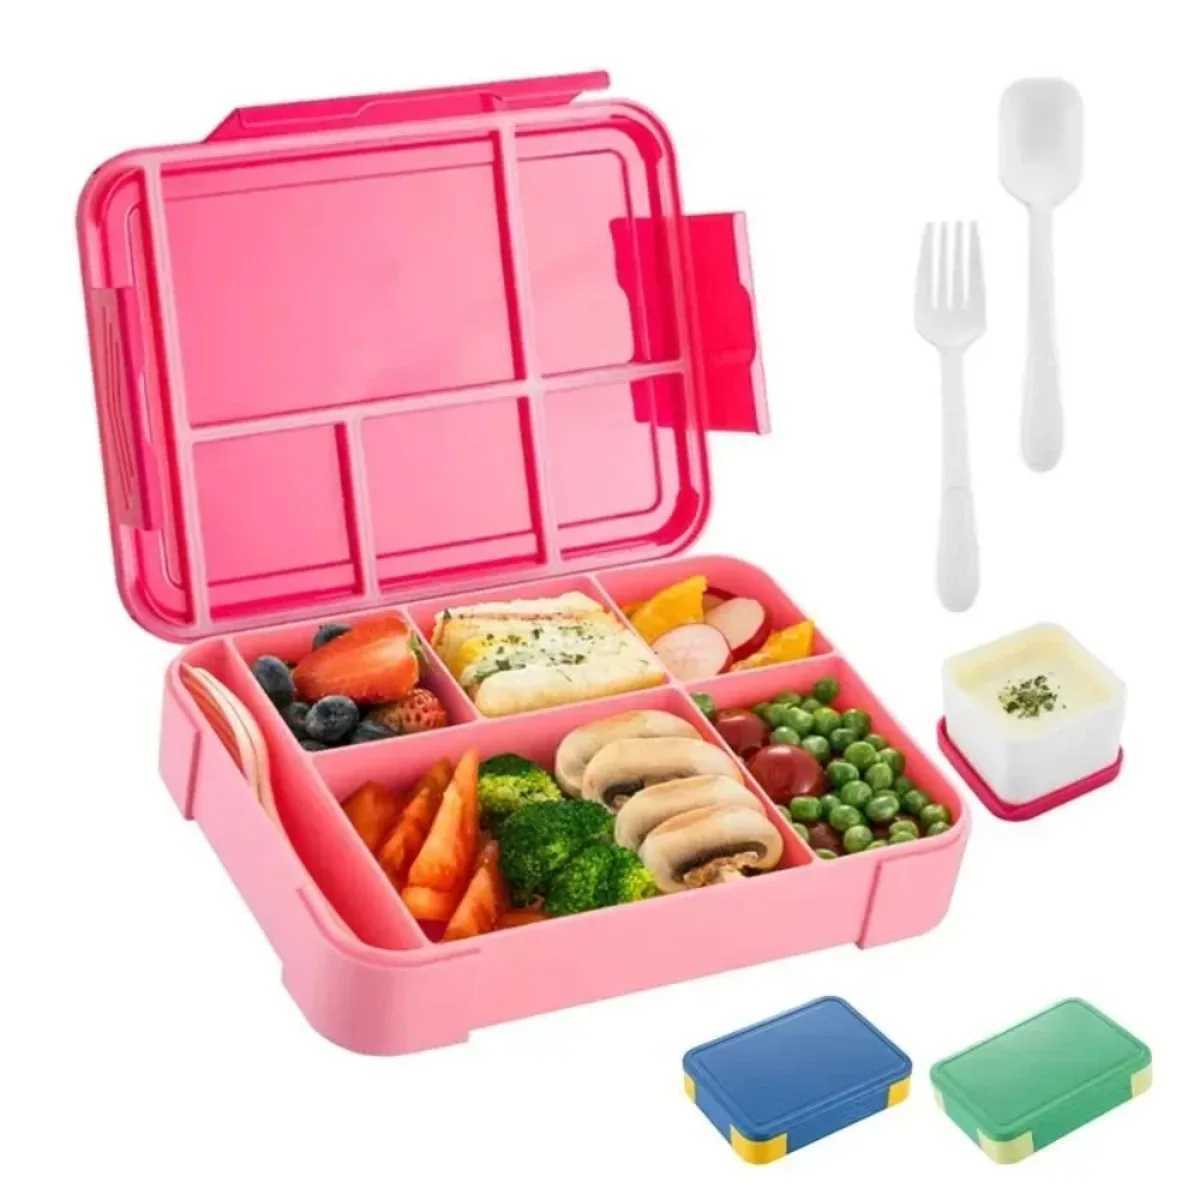 Lunchlådor Väskor Barn och studenter 1330 ml Läcksäker lunchlådor förseglade i fack Fruktlådor Salladlådor Mikrovågsvärme Bento Box